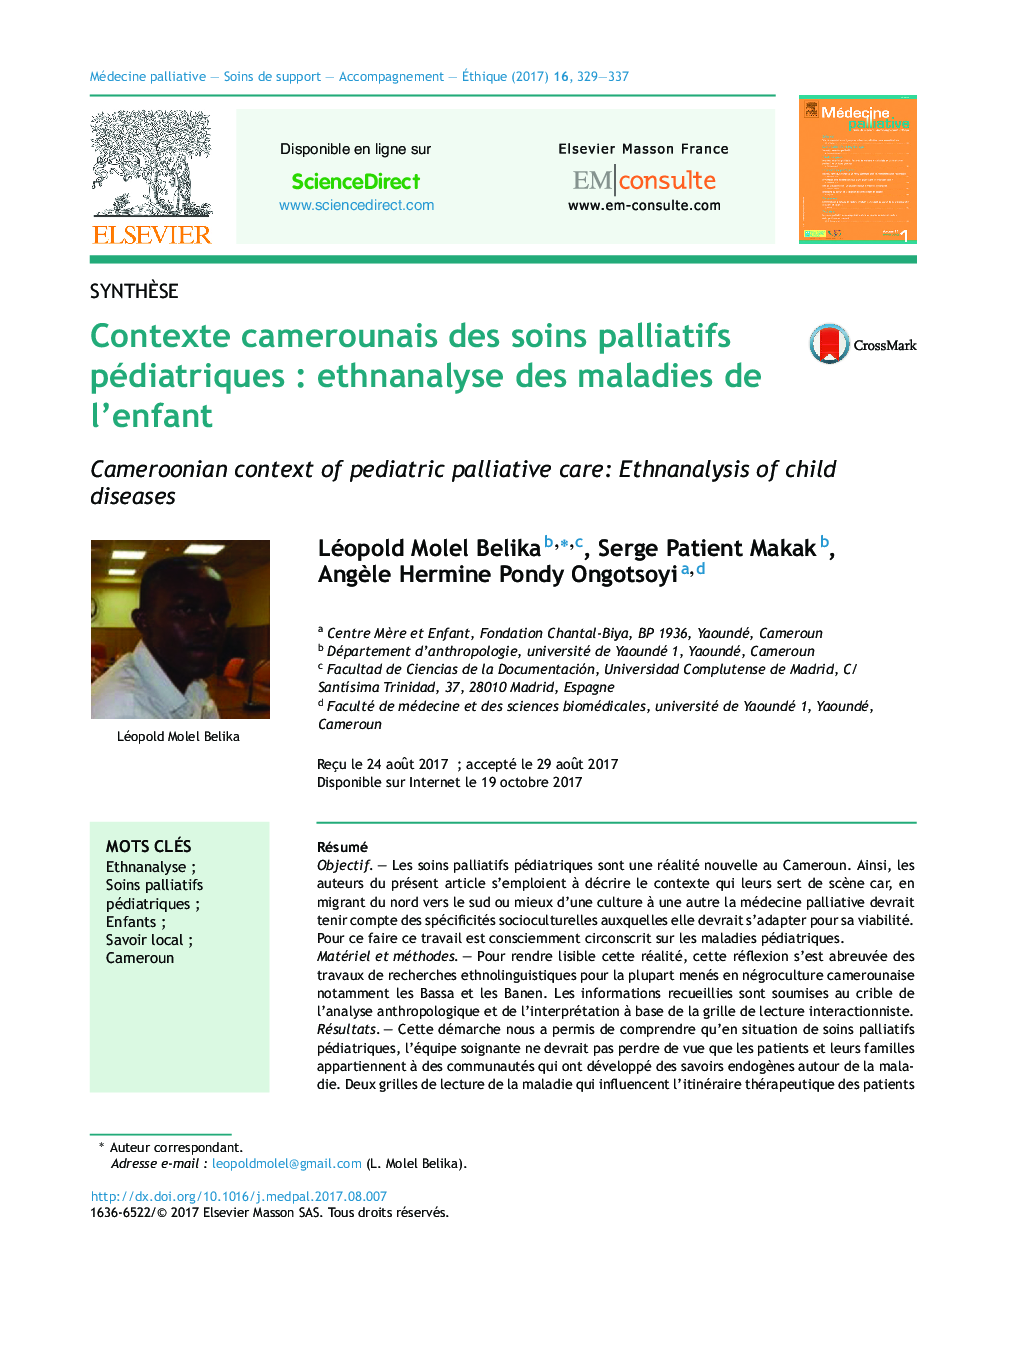 Contexte camerounais des soins palliatifs pédiatriquesÂ : ethnanalyse des maladies de l'enfant